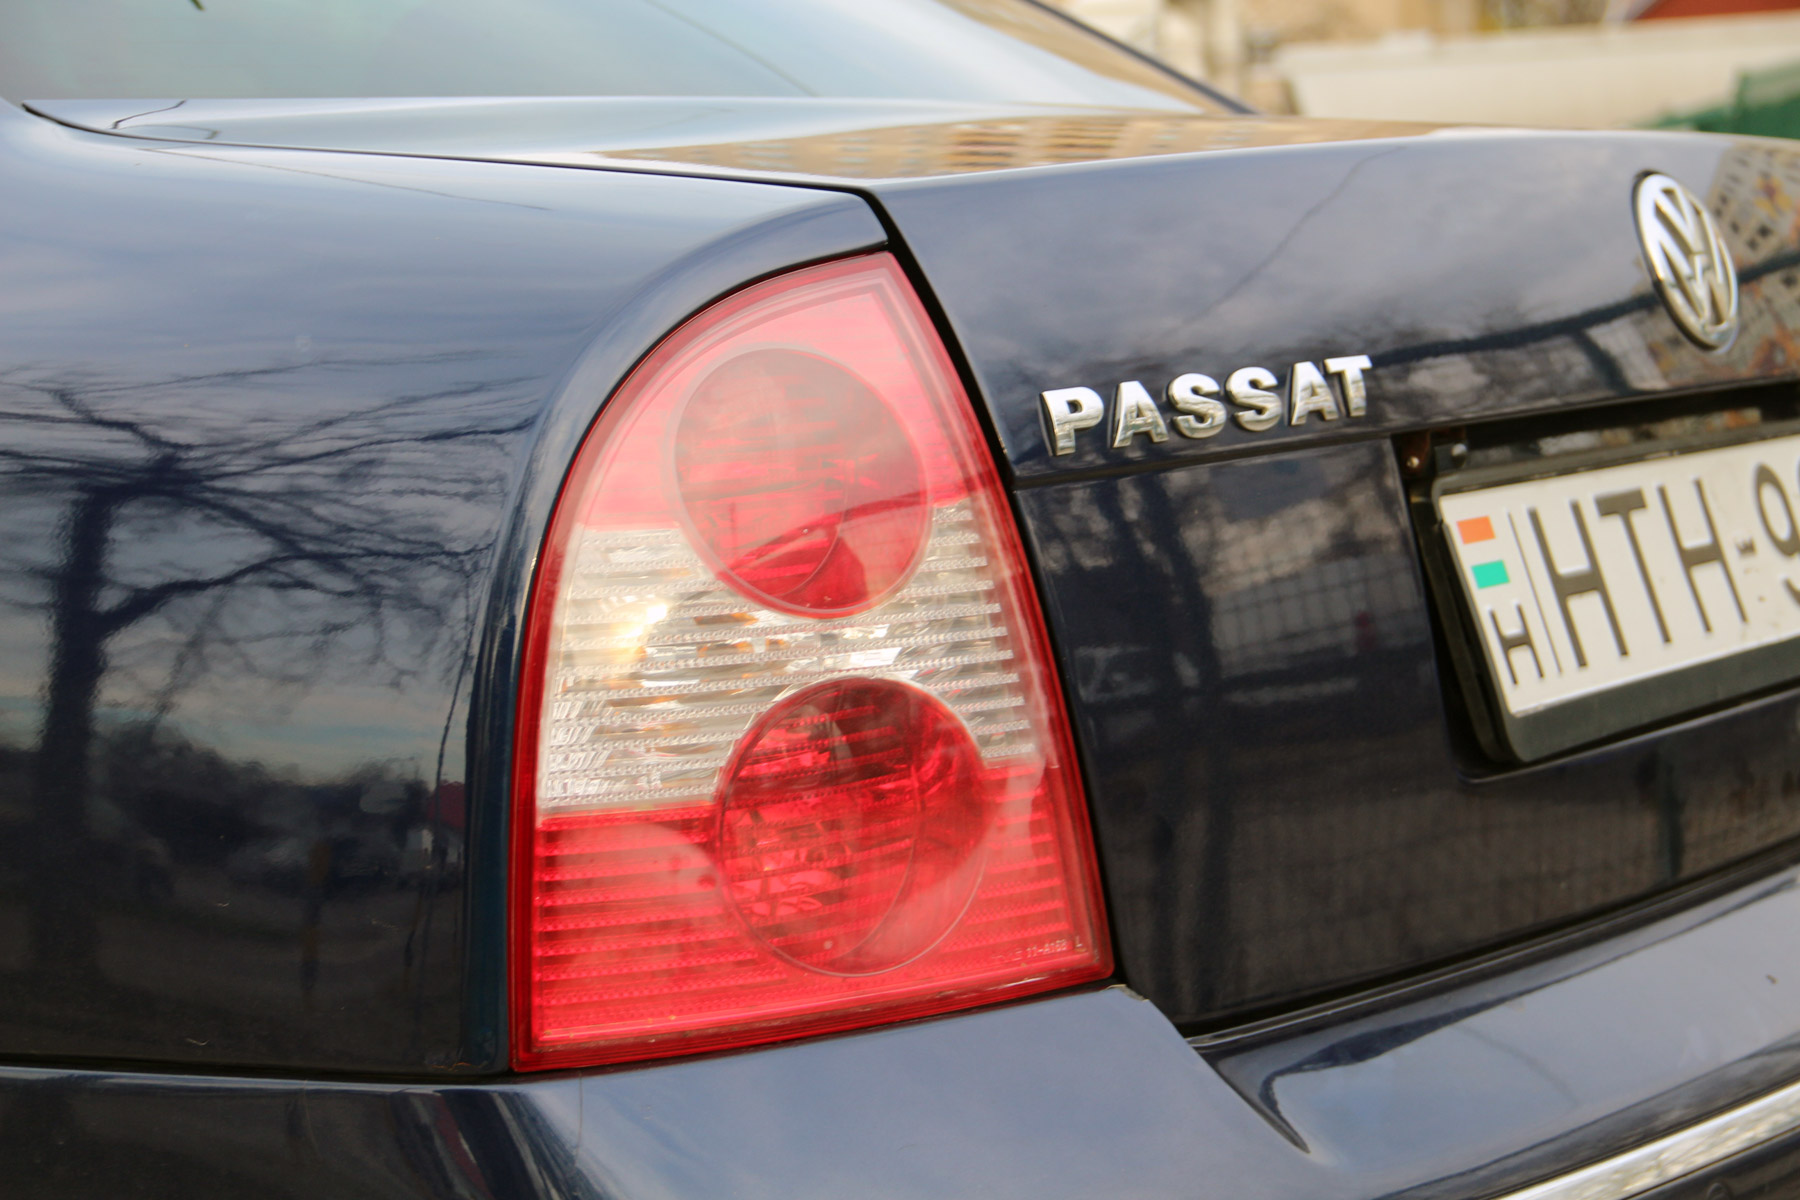 Használt autó: az egzotikus Passat 300 ezer km-rel is autó 10